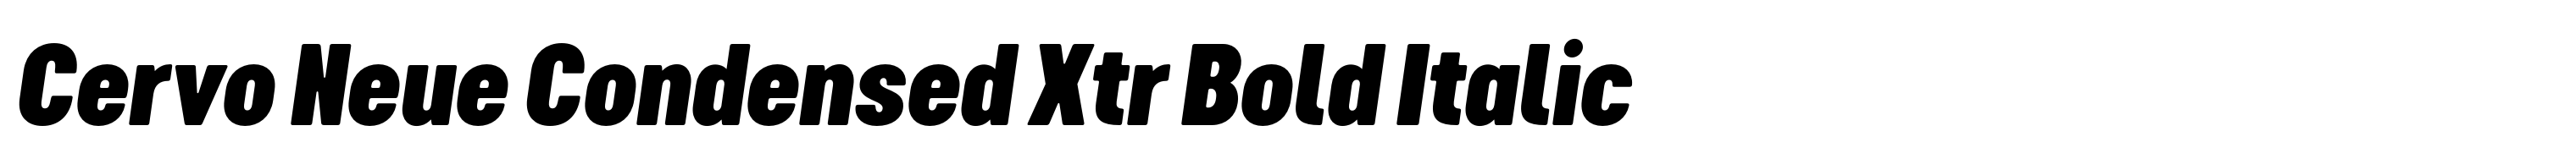 Cervo Neue Condensed Xtr Bold Italic